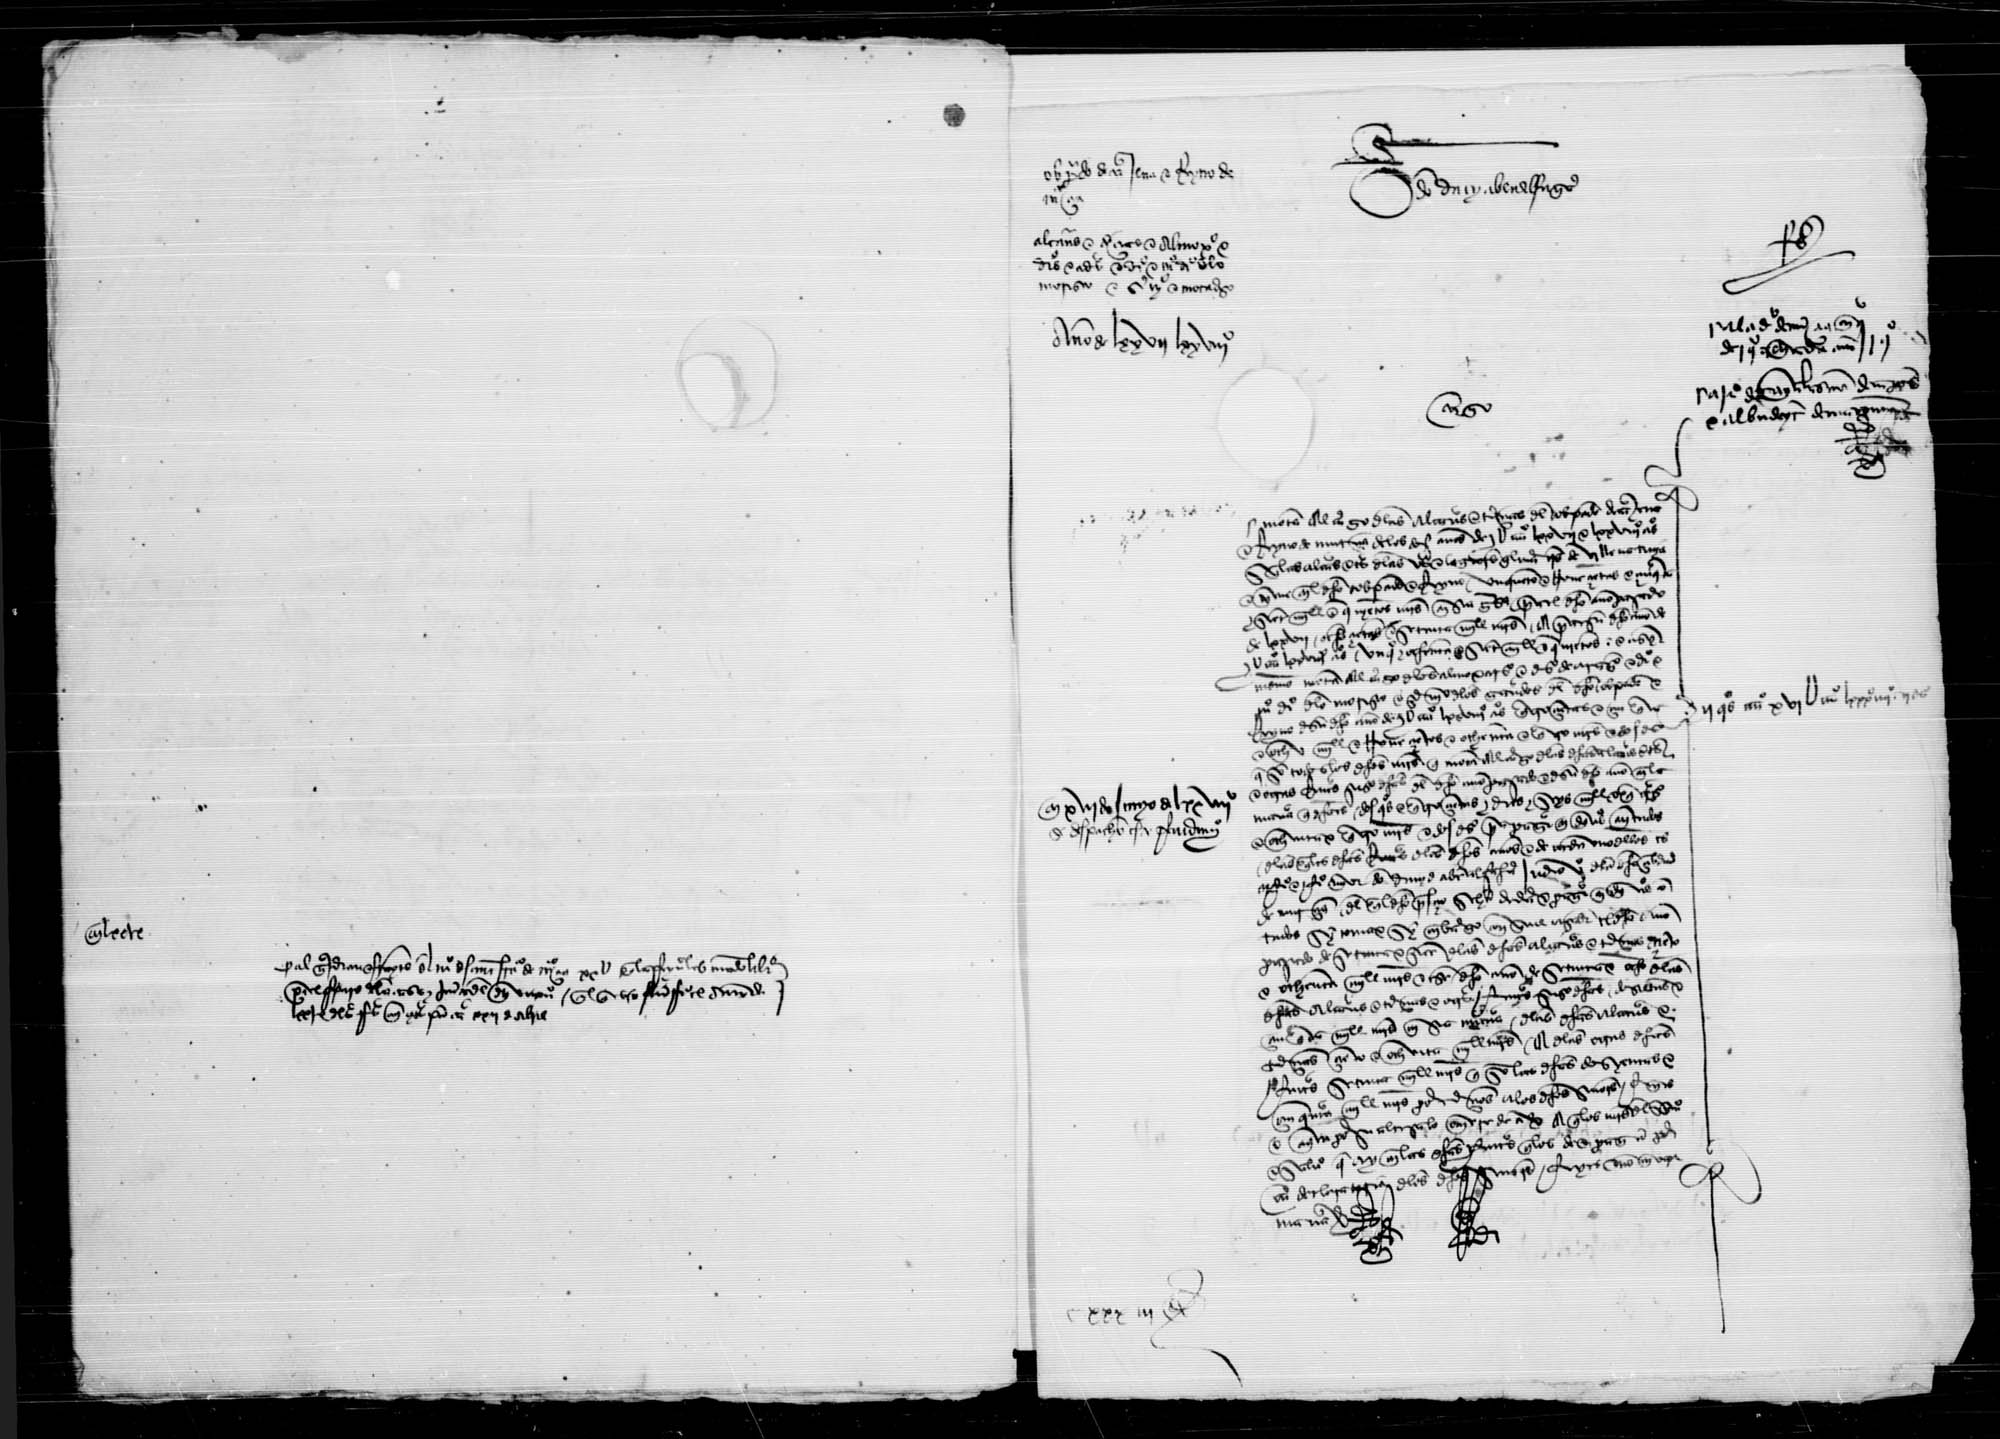 Cargo y libranzas que se hacen a don David Aben Alfahar como arrendador de las alcabalas y tercias de 1477 y del conjunto de rentas reales de 1478 del obispado de Cartagena con el reino de Murcia.